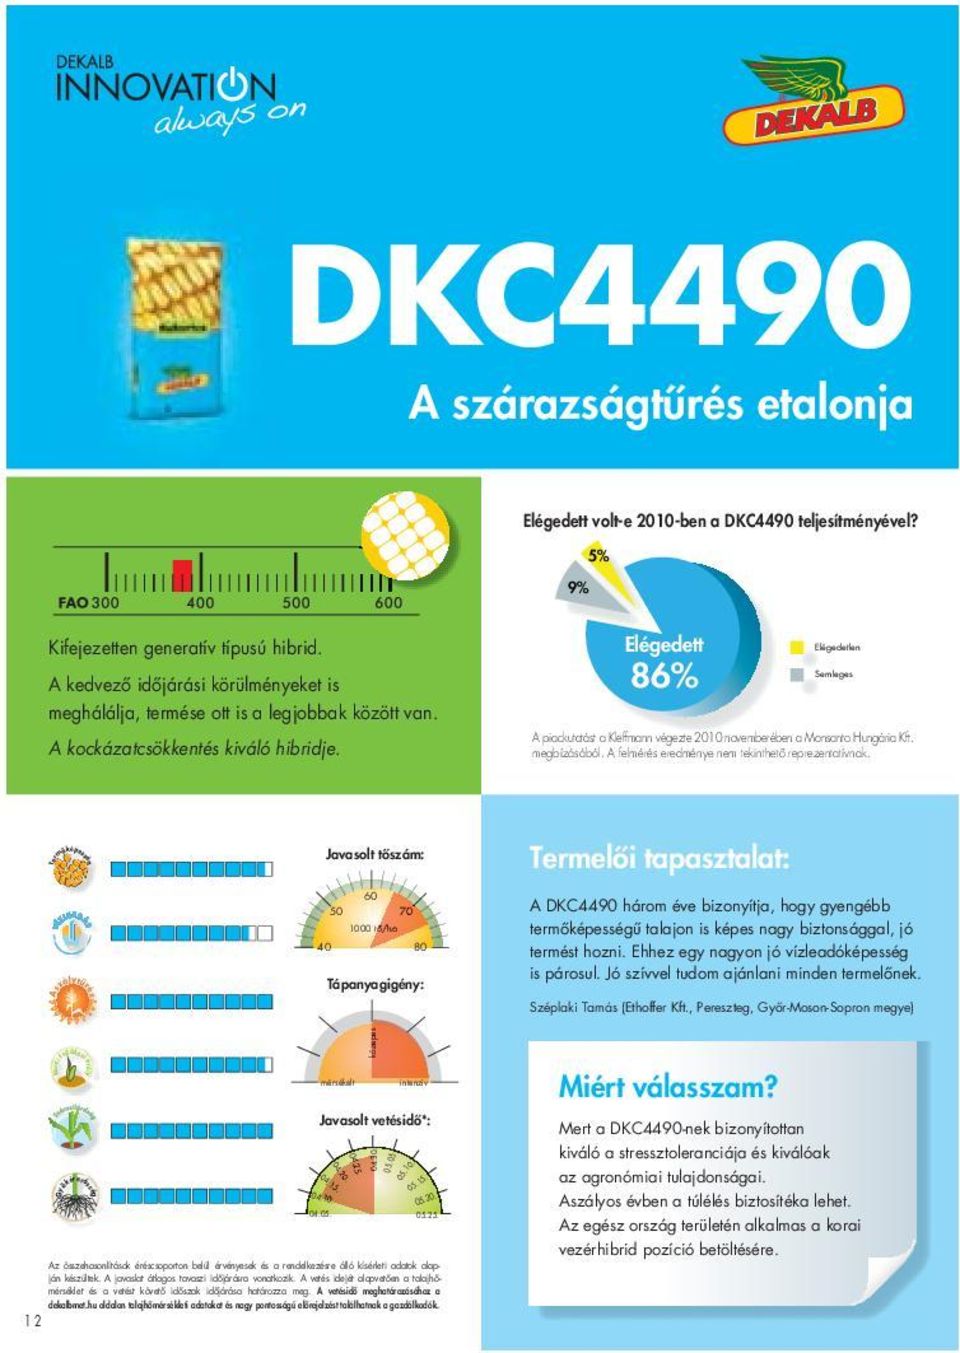 86% Semleges A piackutatást a Kleffmann végezte 2010 novemberében a Monsanto Hungária Kft. megbízásából. A felmérés eredménye nem tekinthető reprezentatívnak.